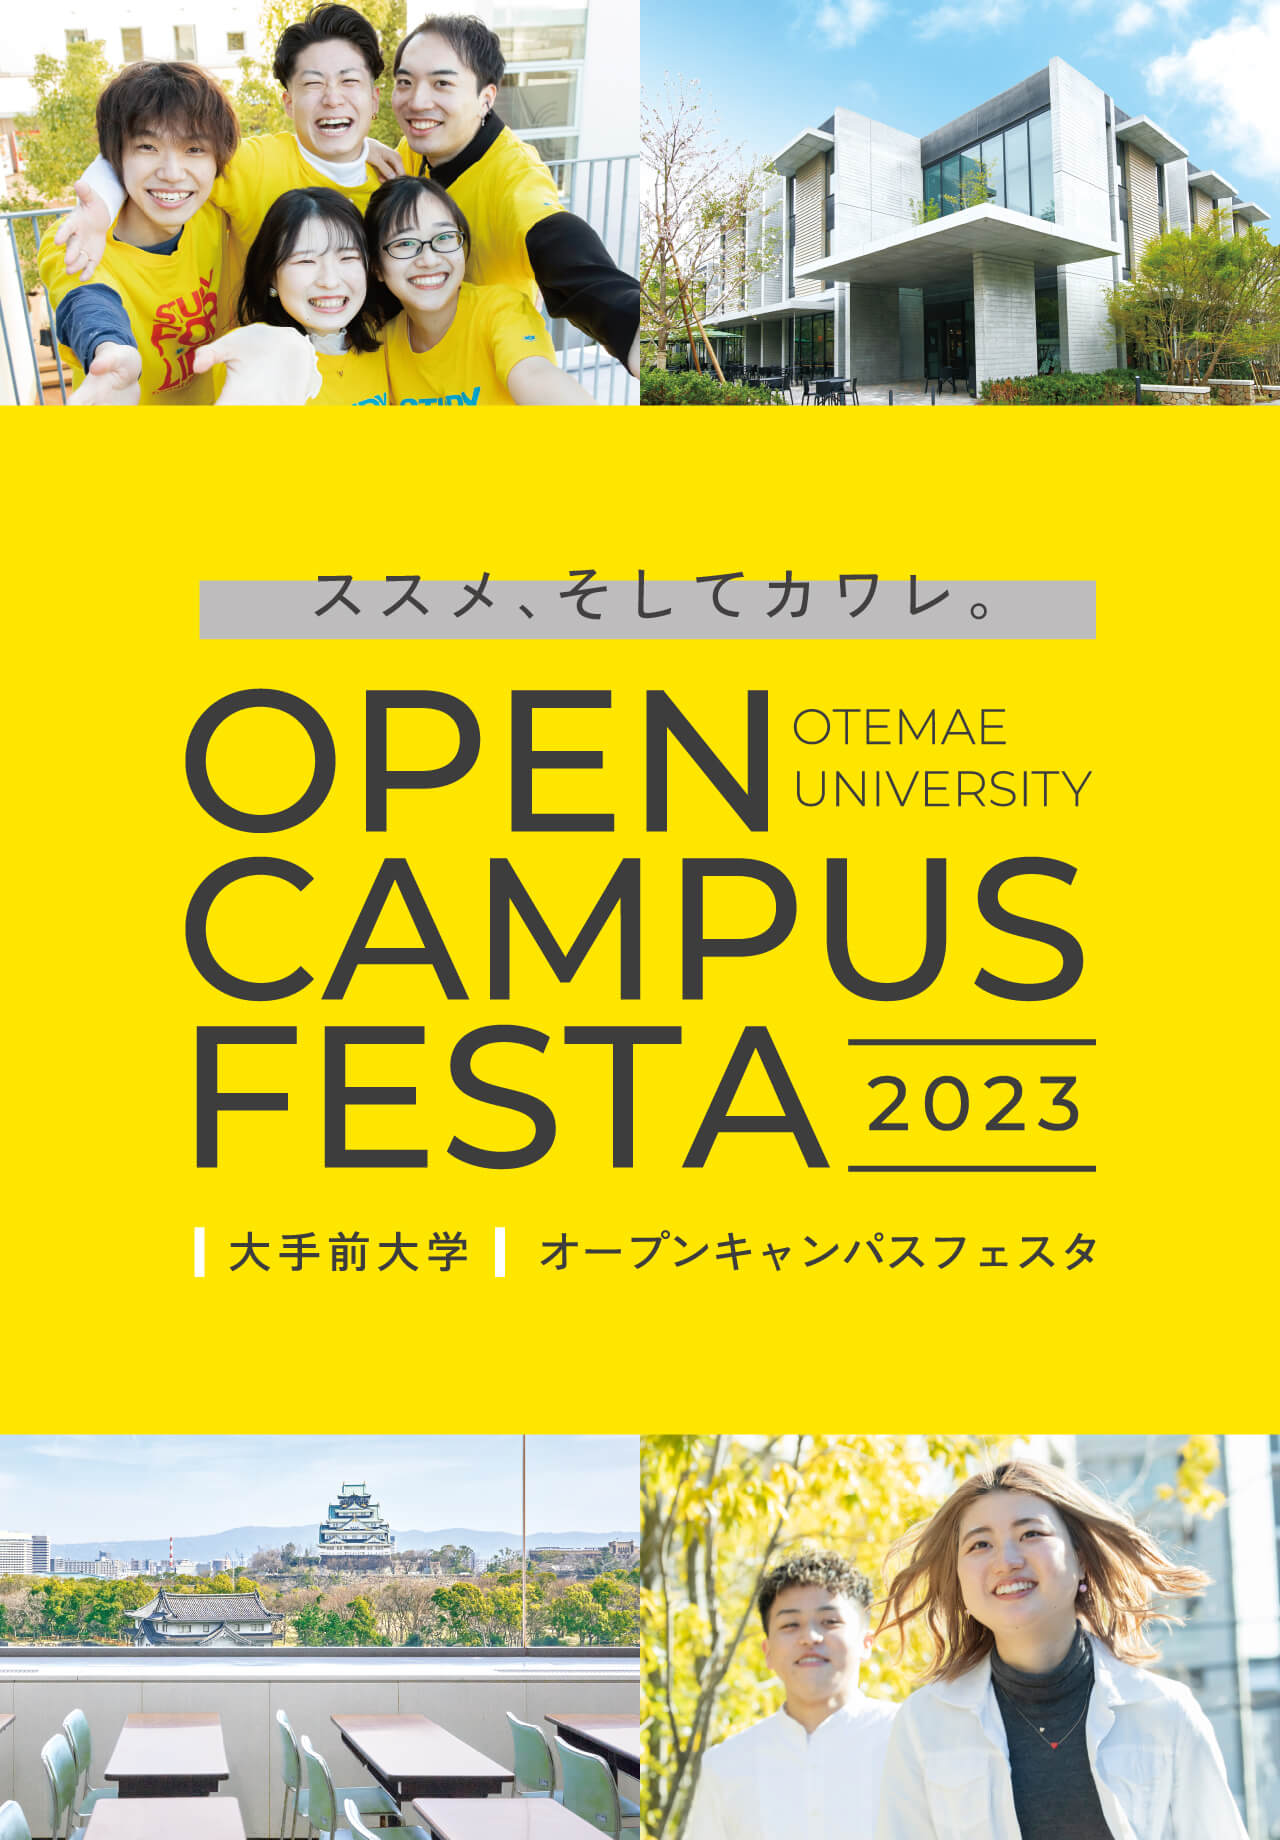 ススメ、そしてカワレ。OPEN CAMPAS FESTA 2023 OTEMAE UNIVERSITY 大手前大学 オープンキャンパスフェスタ